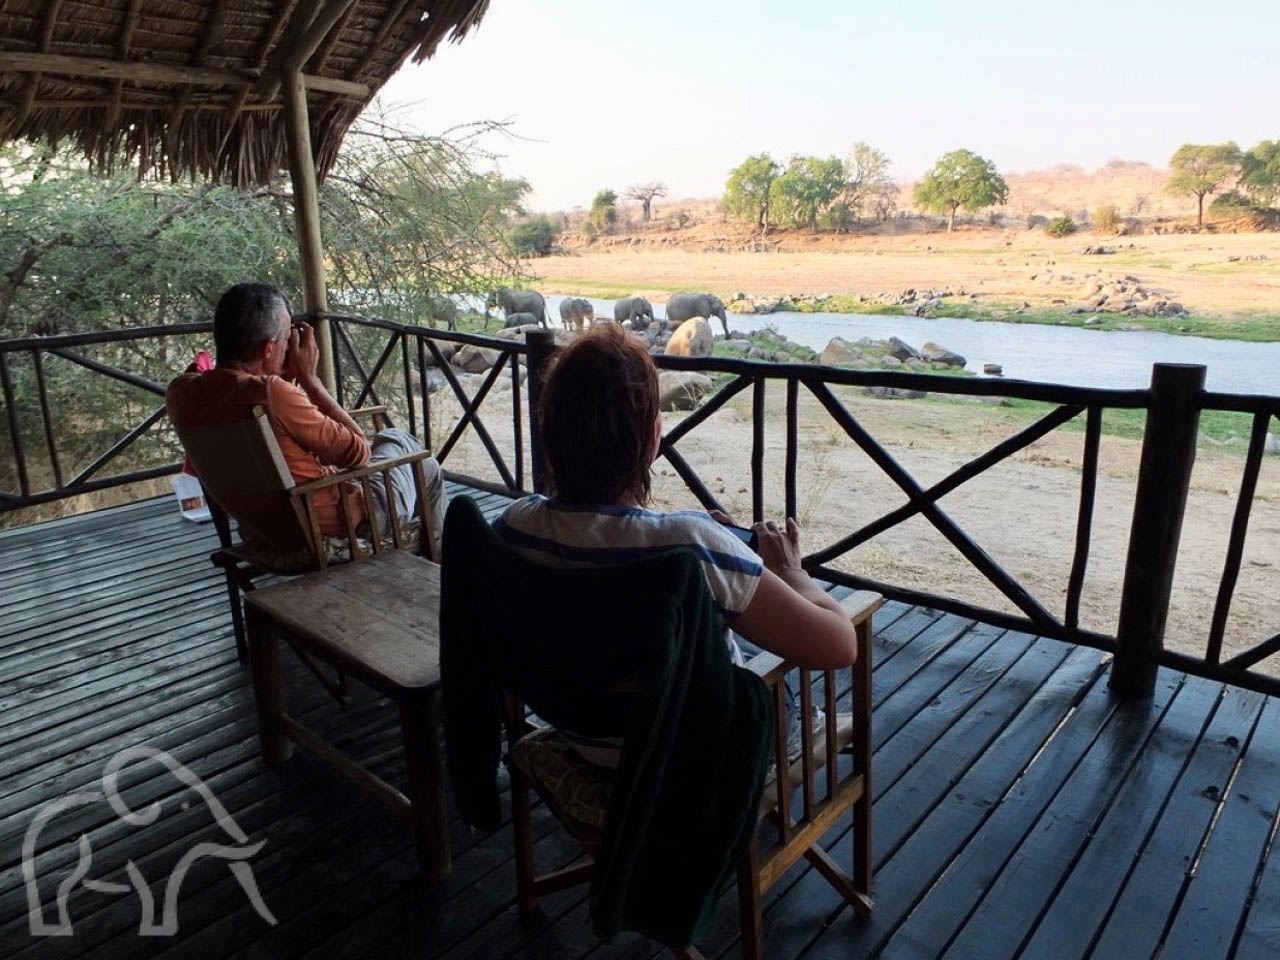 Over ons. Safari Ruaha Tanzania. Oprichters van Droomreis Tanzania zitten op hun veranda en kijken uit over de rivier waar olifanten komen drinken